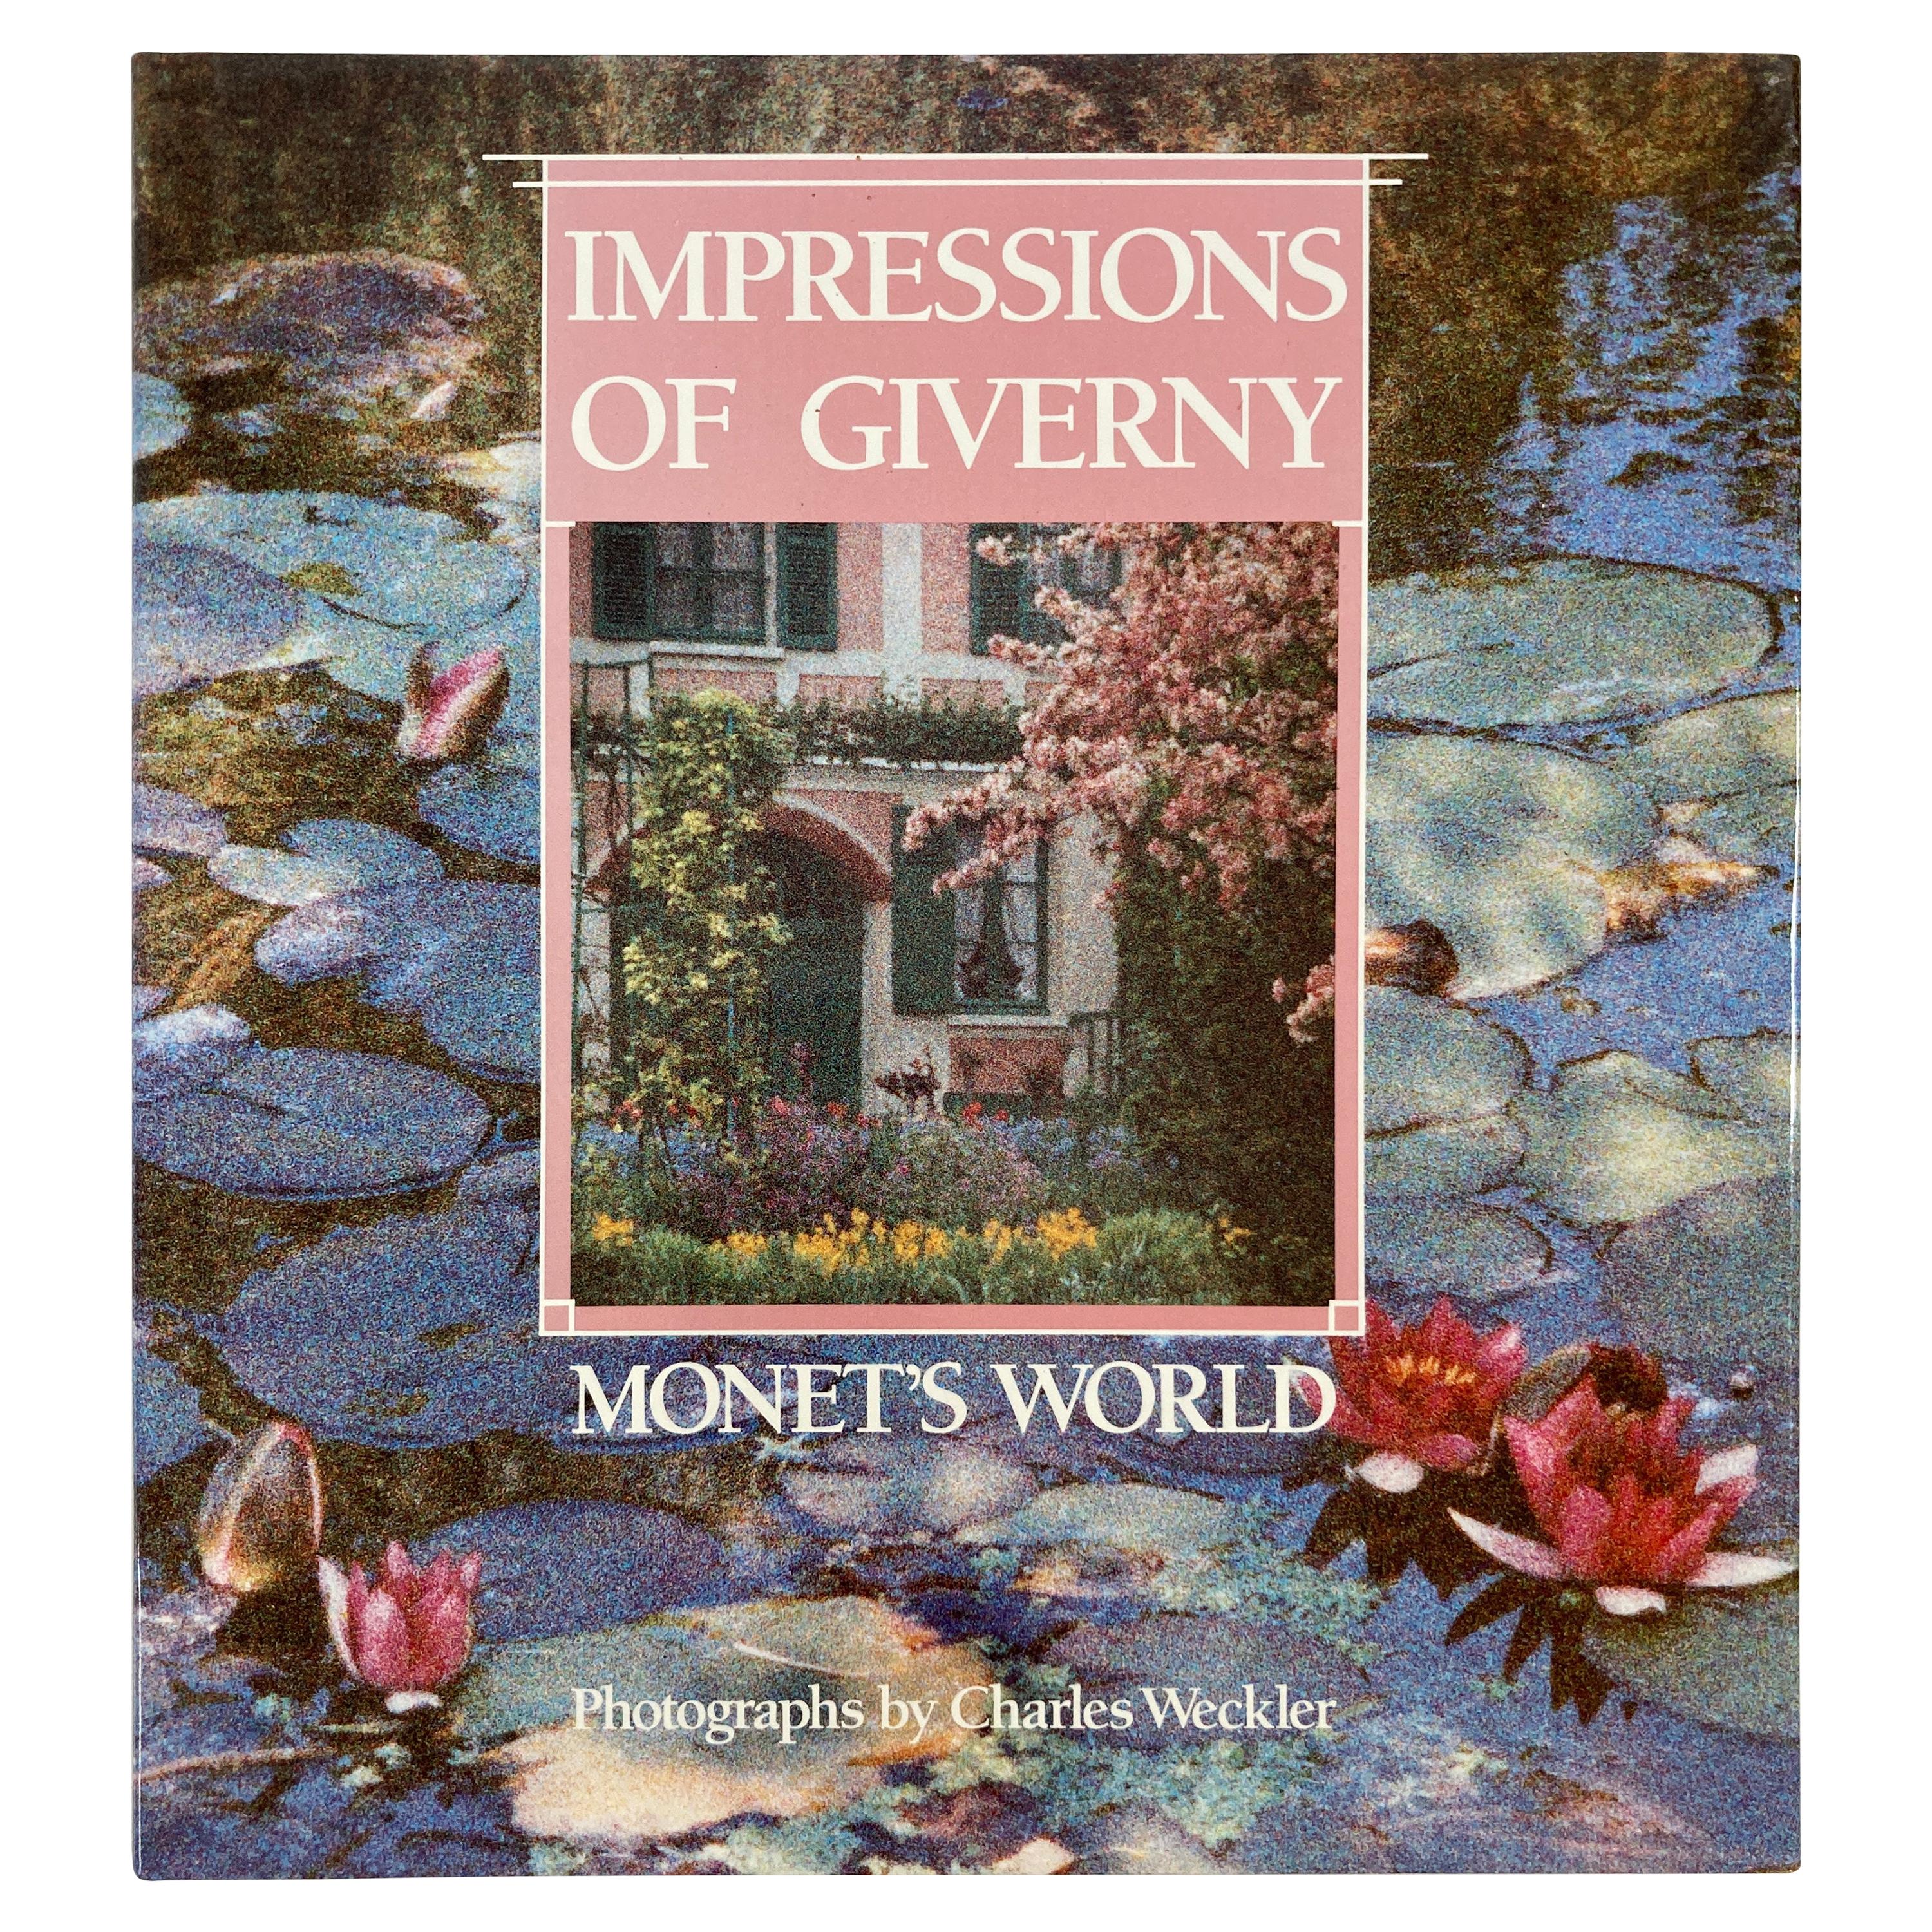 Livre à couverture rigide « Impressions of Giverny Monet's World » (Les impressions du monde de Giverny Monet) de Charles Weckler